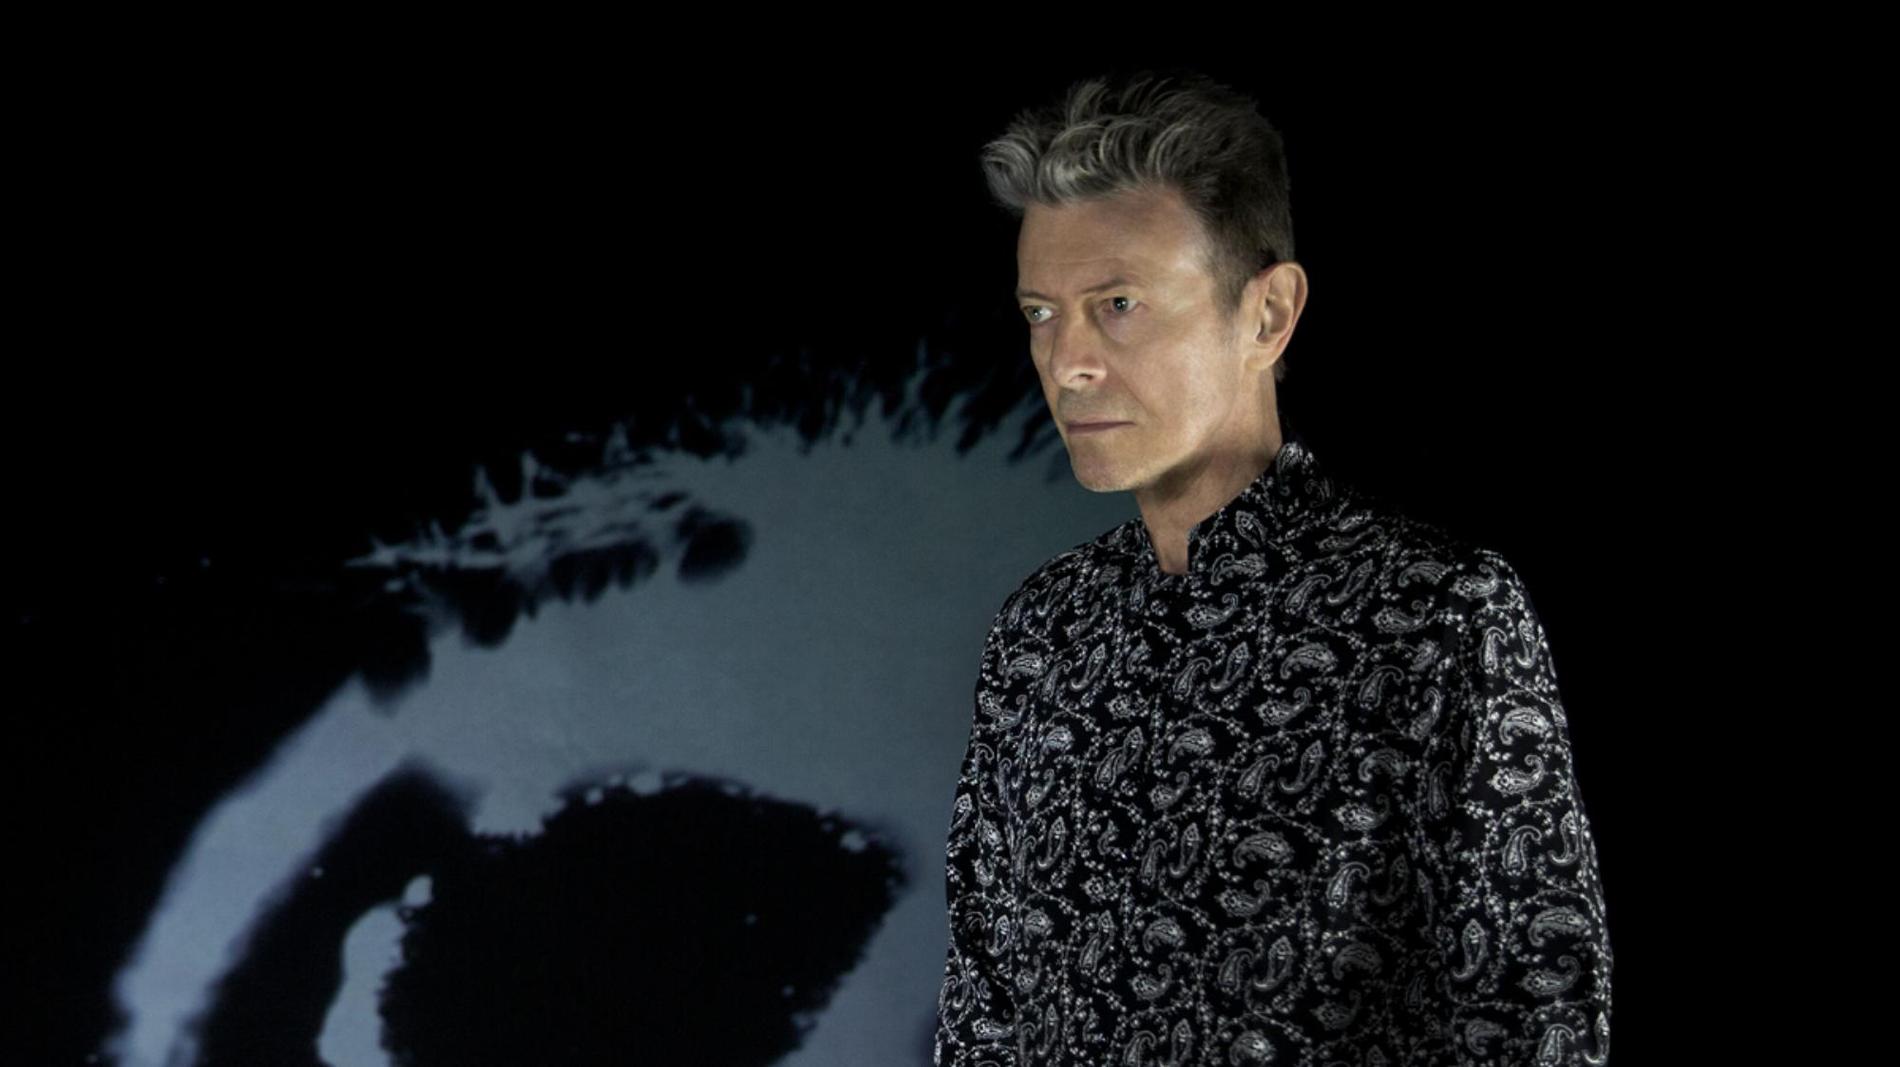 Nyheten om David Bowies bortgång vecklade ut albumet ”Blackstar” i sin fulla briljans.